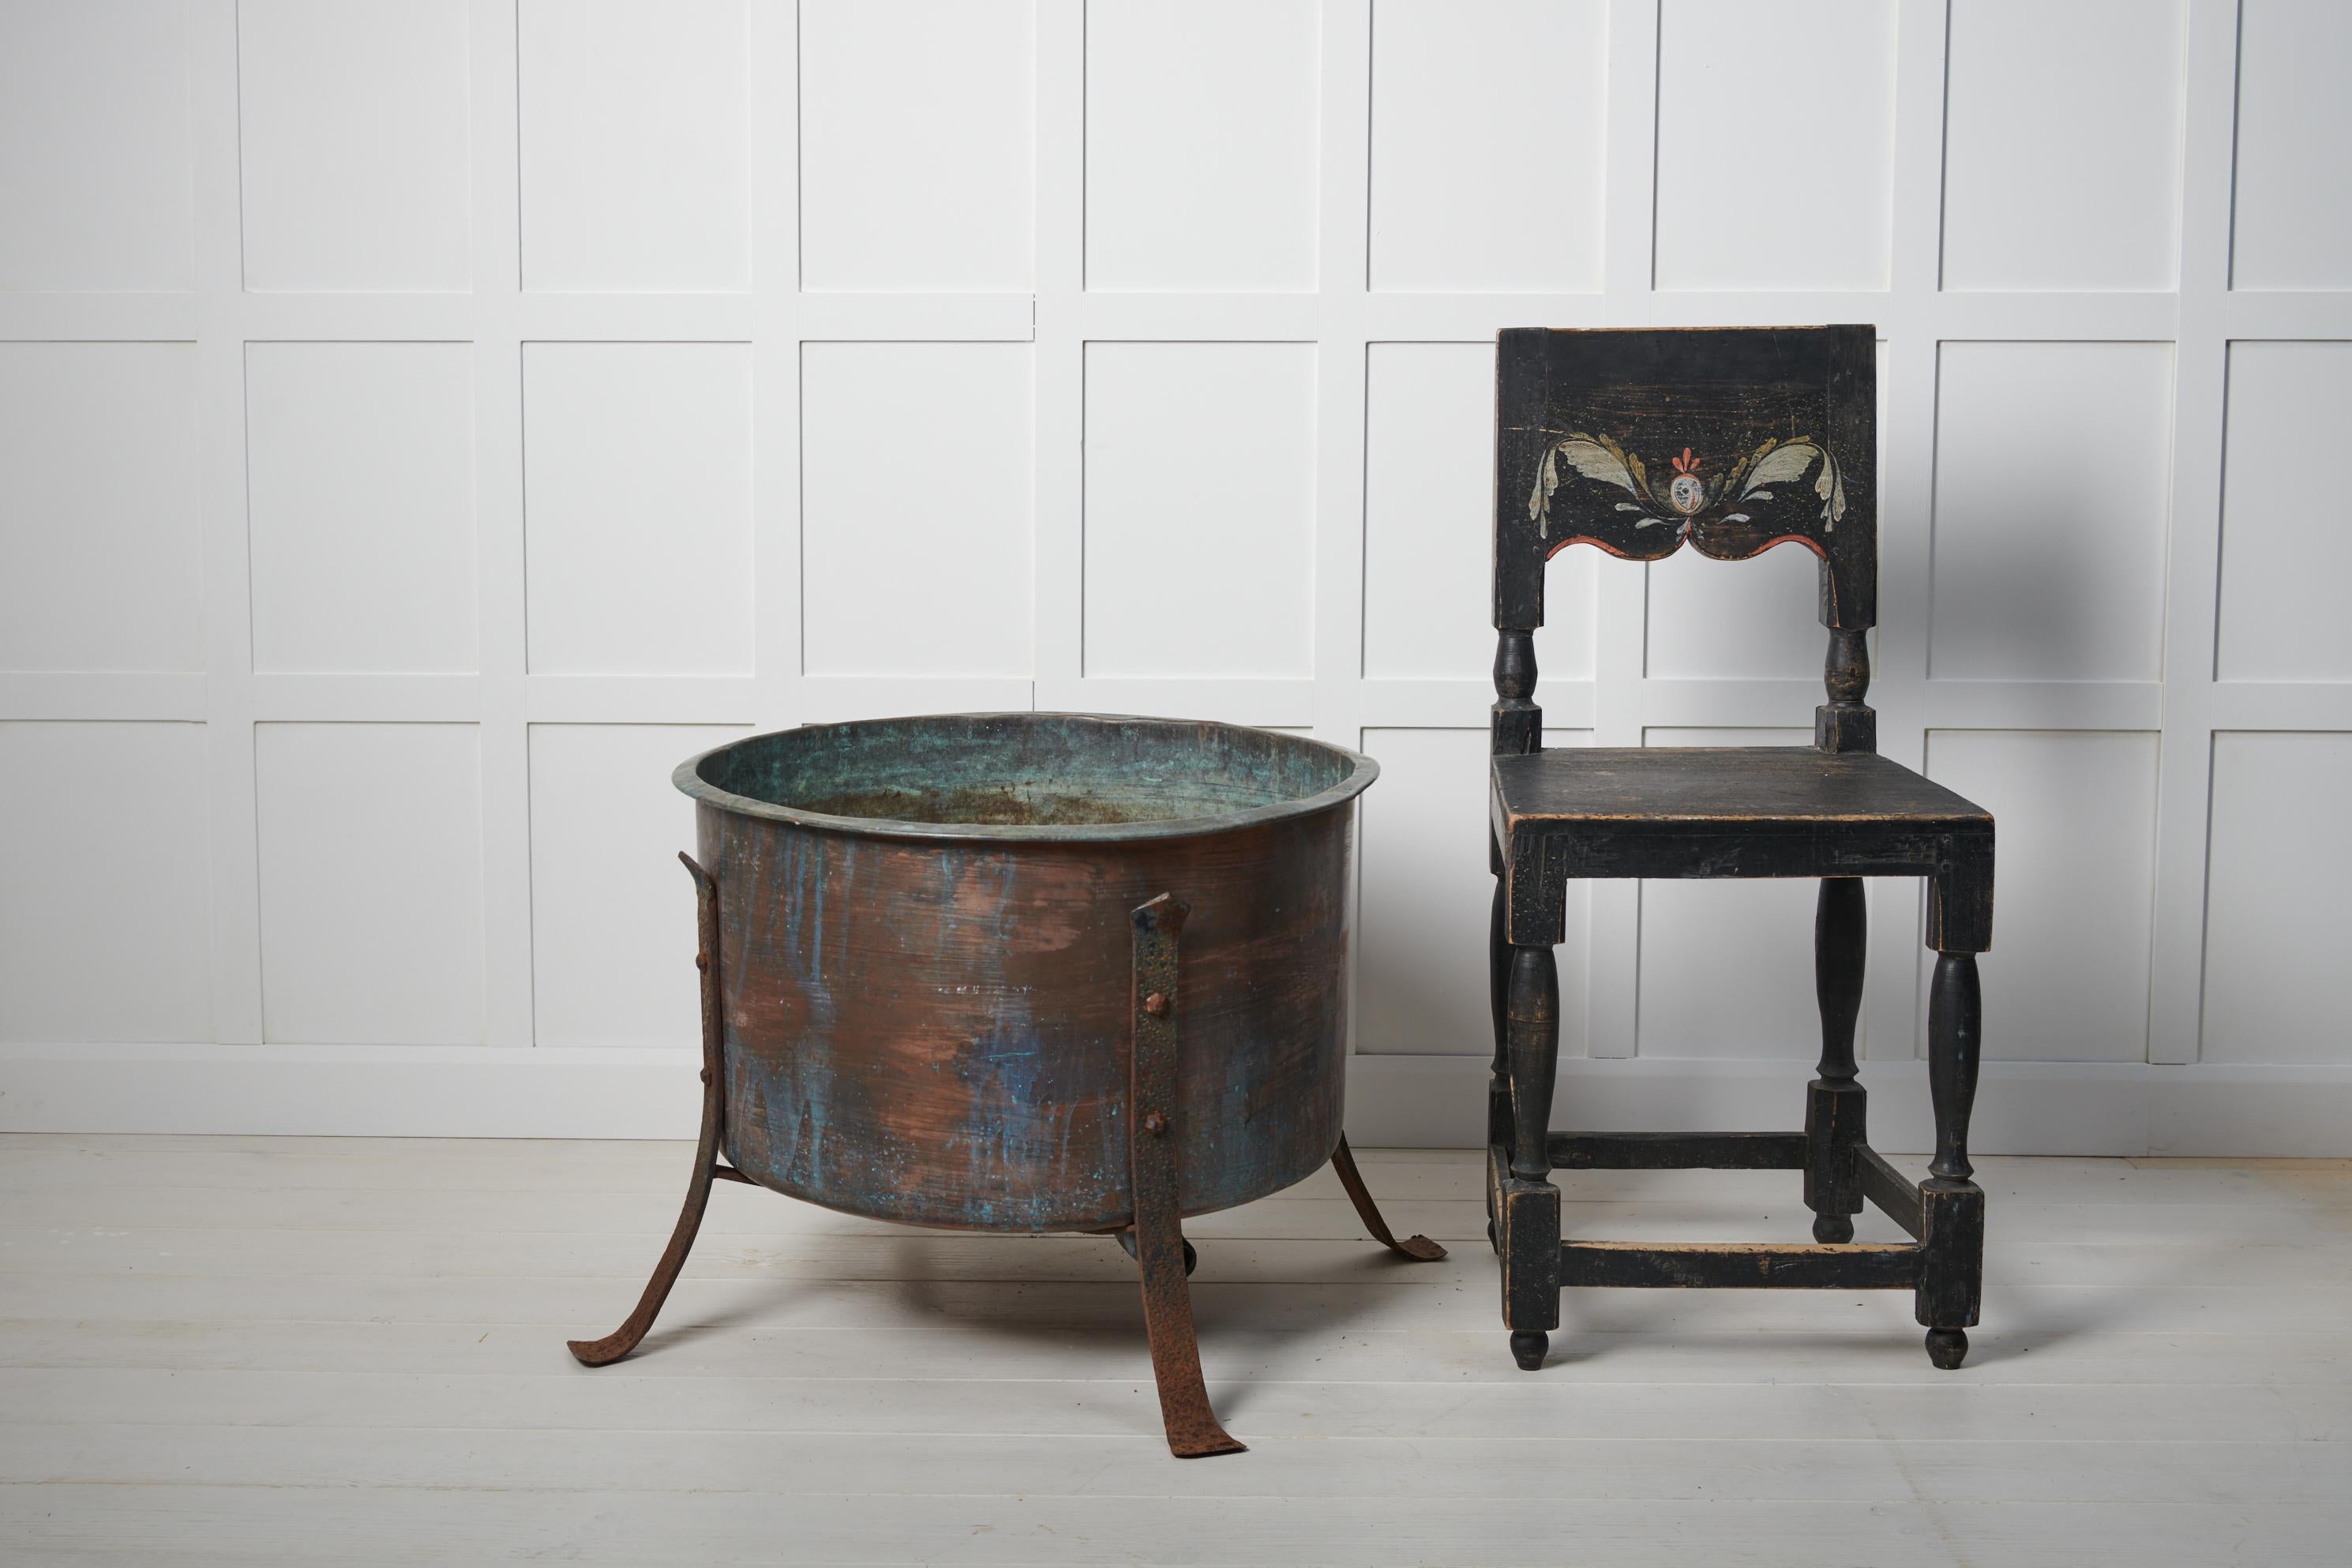 Großer antiker Pflanzkübel aus Kupfer, hergestellt in Schweden in den späten 1800er Jahren. Das Pflanzgefäß ist ursprünglich ein großer Topf und besteht aus massivem Kupfer mit einem Gestell aus handgeschmiedetem Eisen. Entwässerungsloch im Boden.